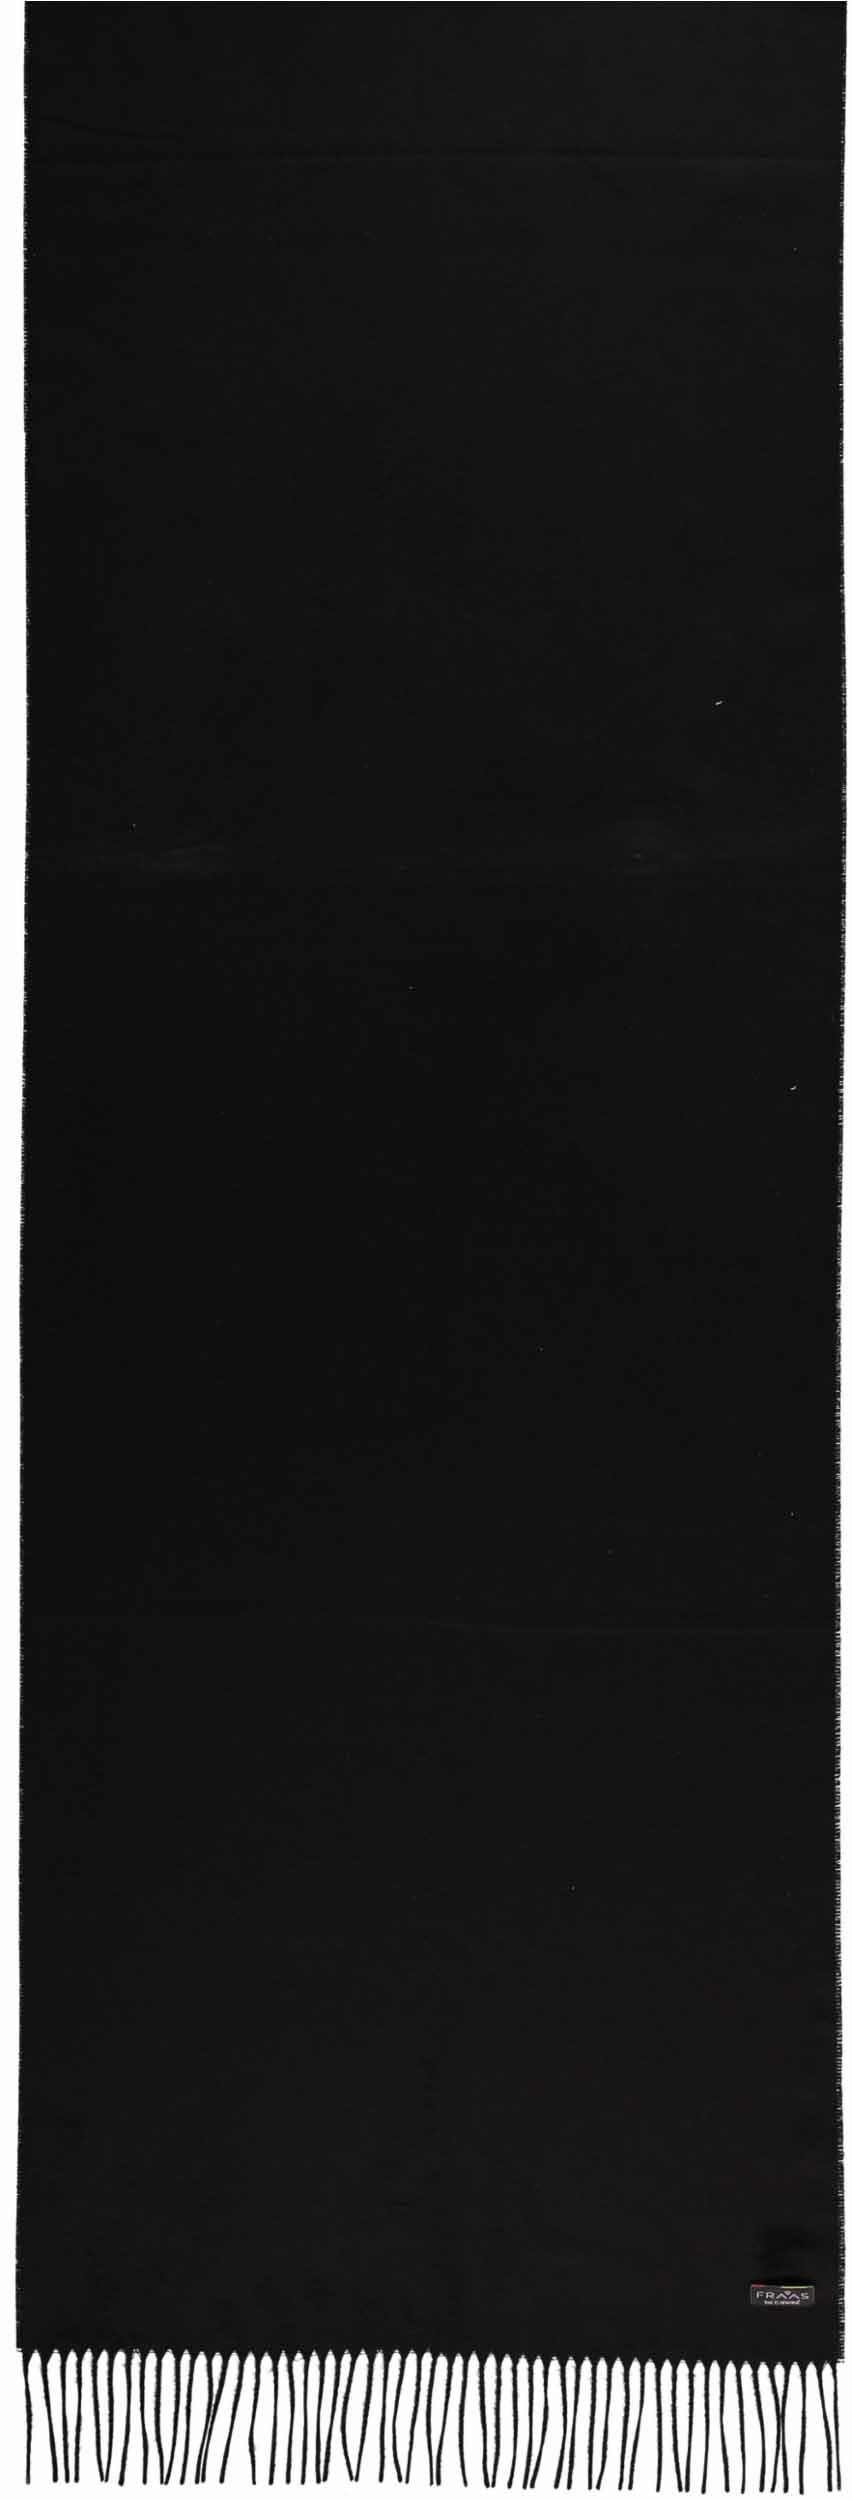 Co2 (1-St), schwarz Schal, Cashmink® Fraas neutral Modeschal